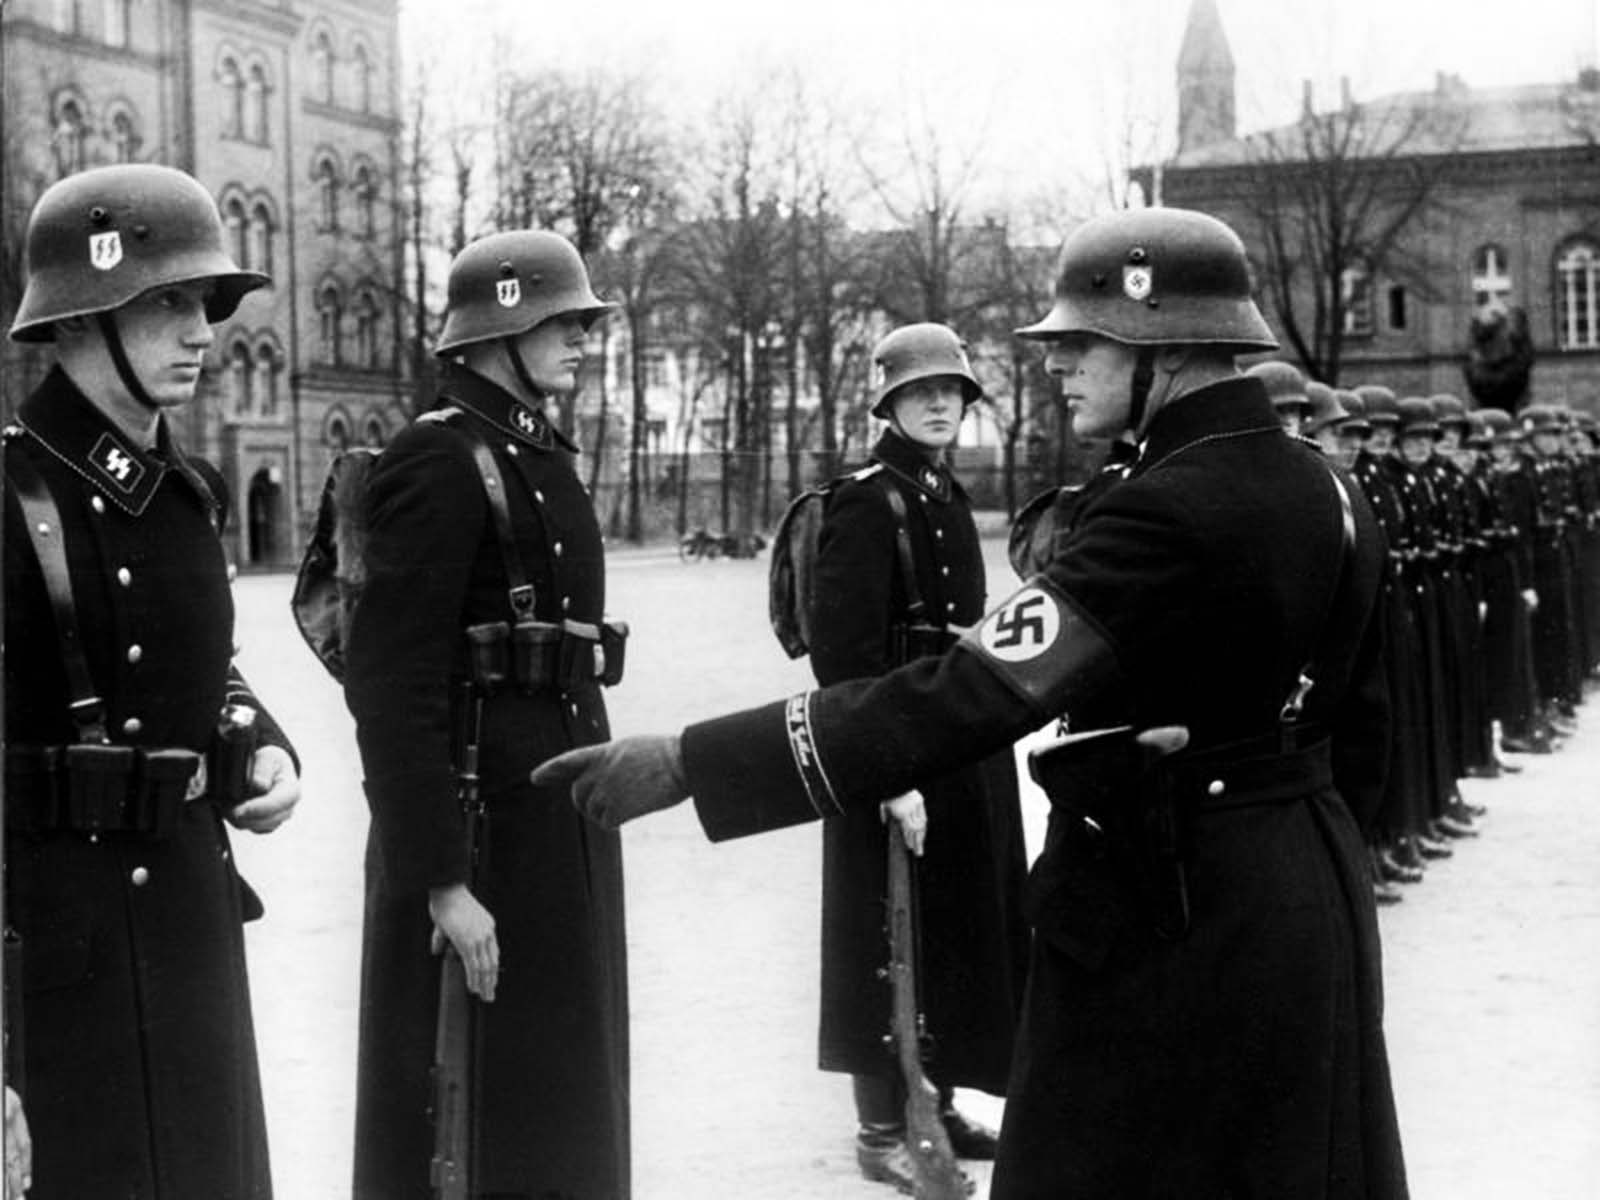 Men of Leibstandarte ‘Adolf Hitler’ at the Lichterfelde barracks in Berlin, Germany, November 22, 1938.